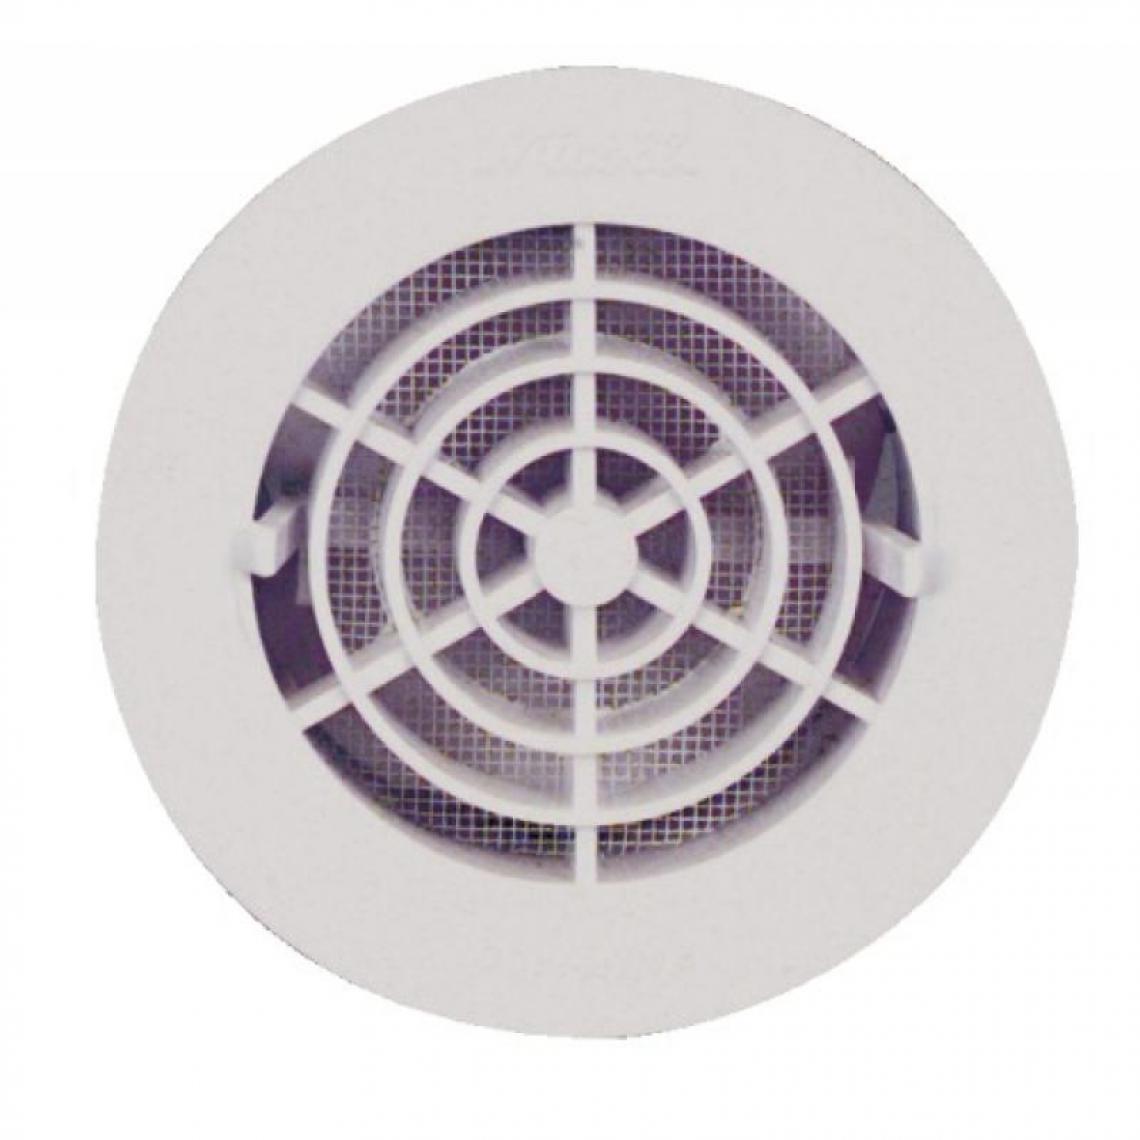 Nicoll - Grille de ventilation intérieures Ø 100 mm - à fermeture FATM pour tubes PVC et gaines - VMC, Ventilation